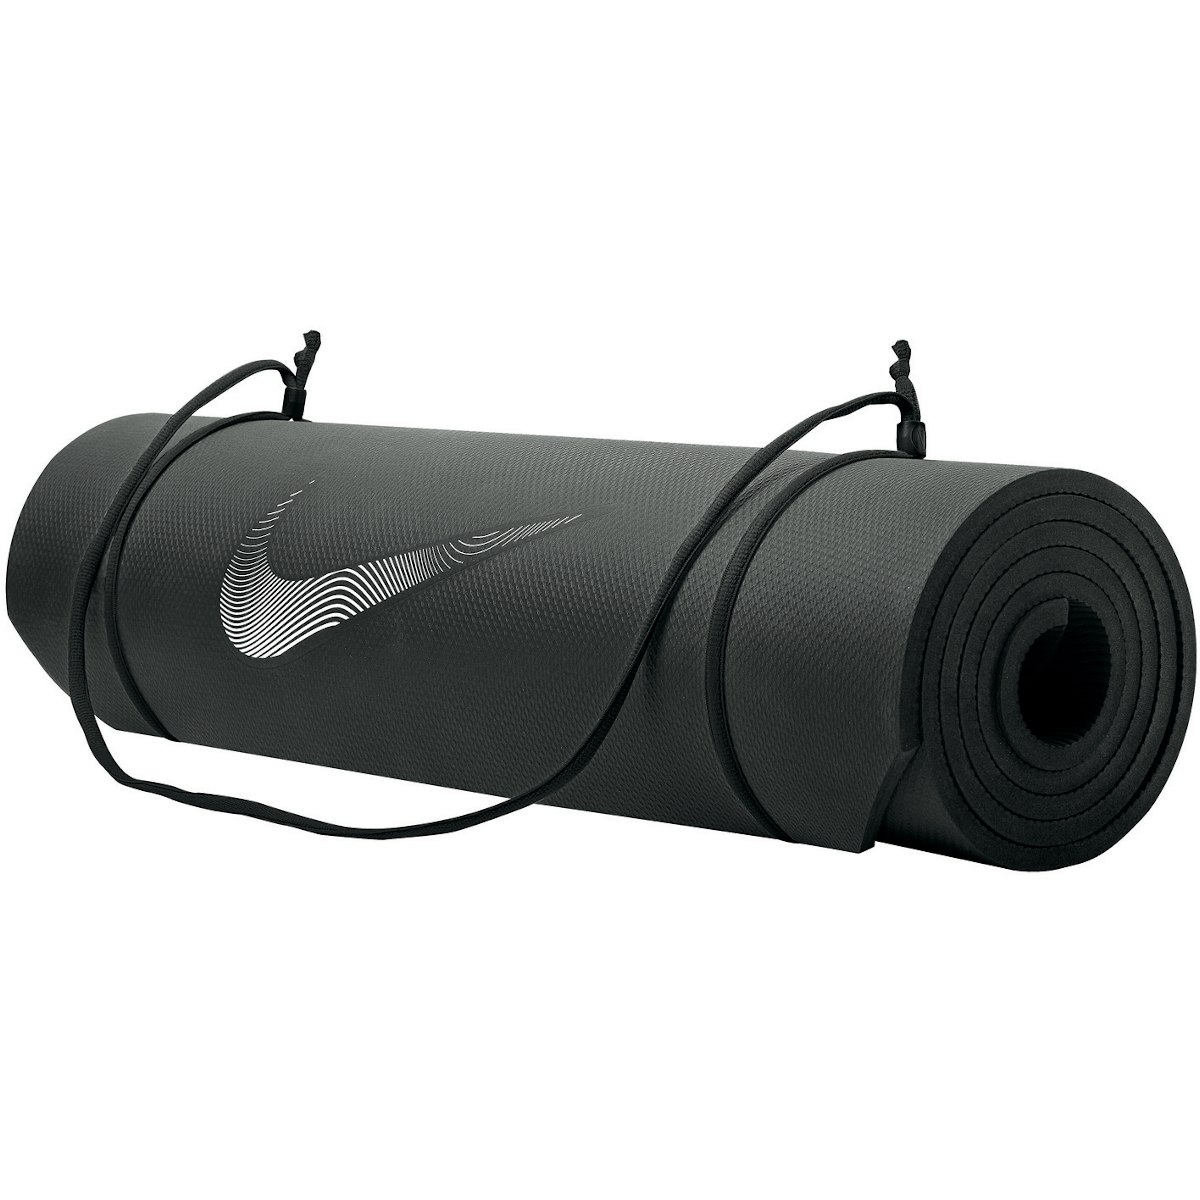 Productfoto van Nike Training Mat 2.0 - zwart/wit 010